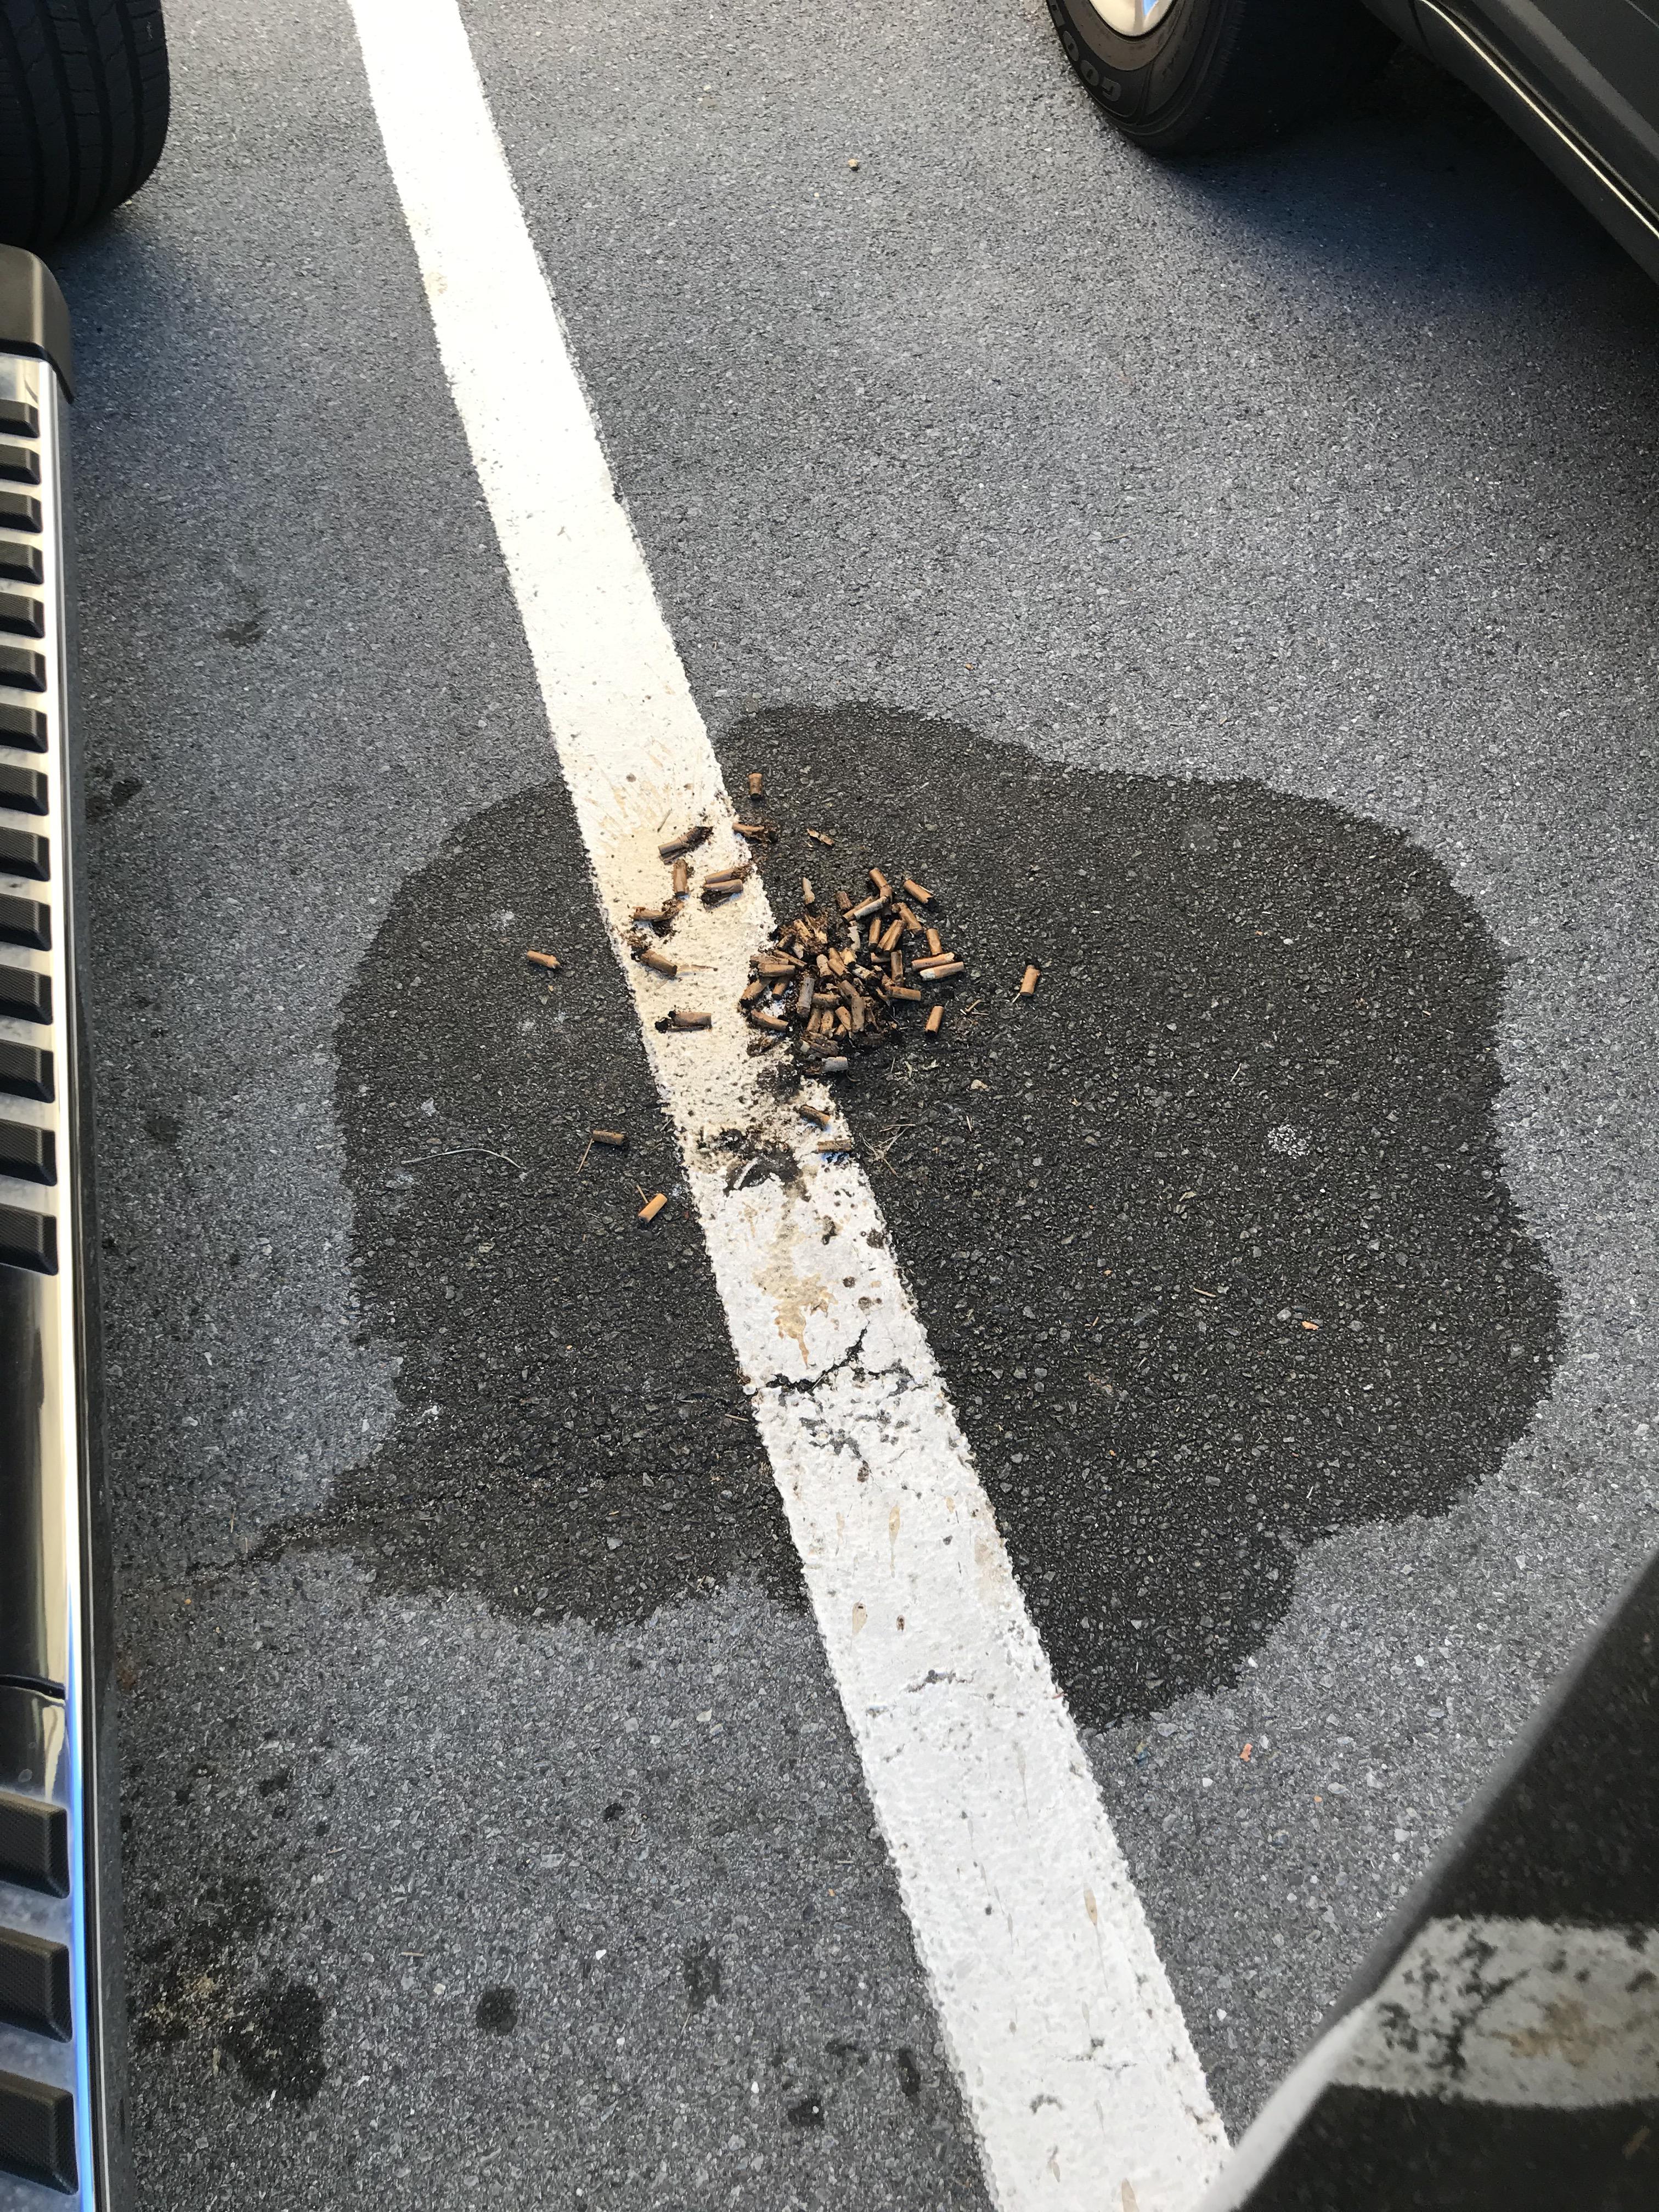 asphalt covered in cigarettes